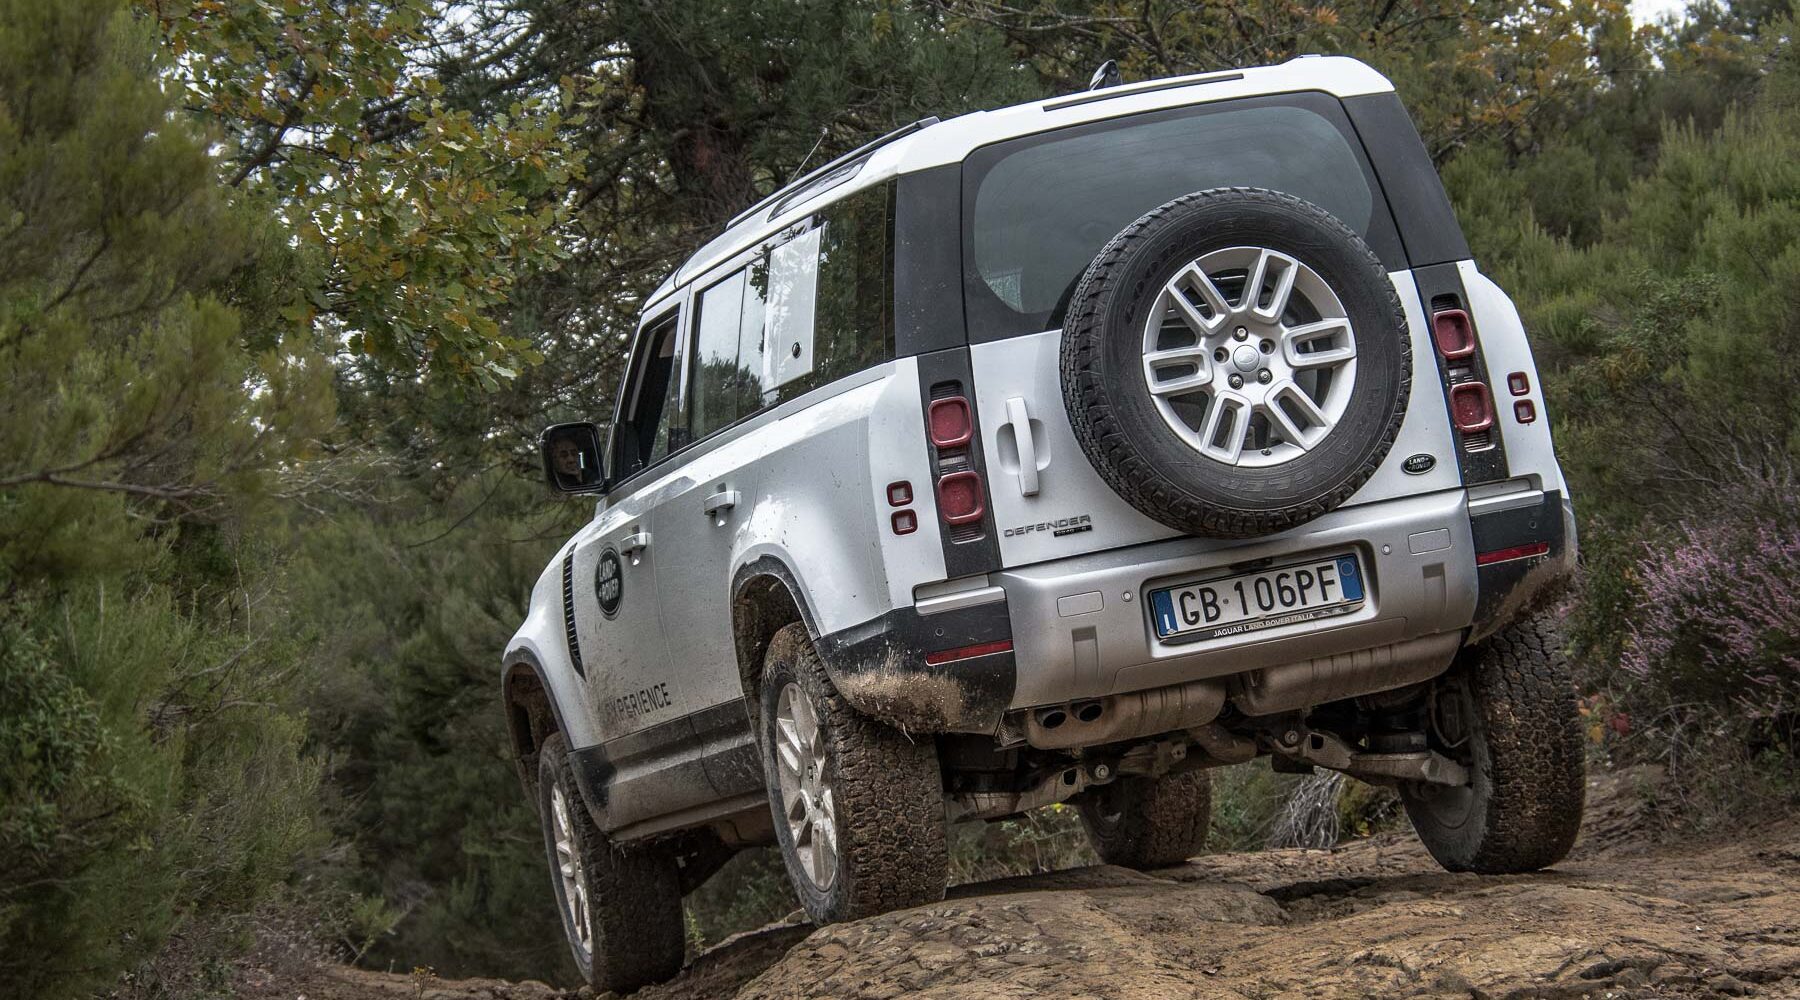 Land-Rover-Experience-Italia-Registro-Italiano-Land-Rover-Tirreno-Adriatica-2020-278